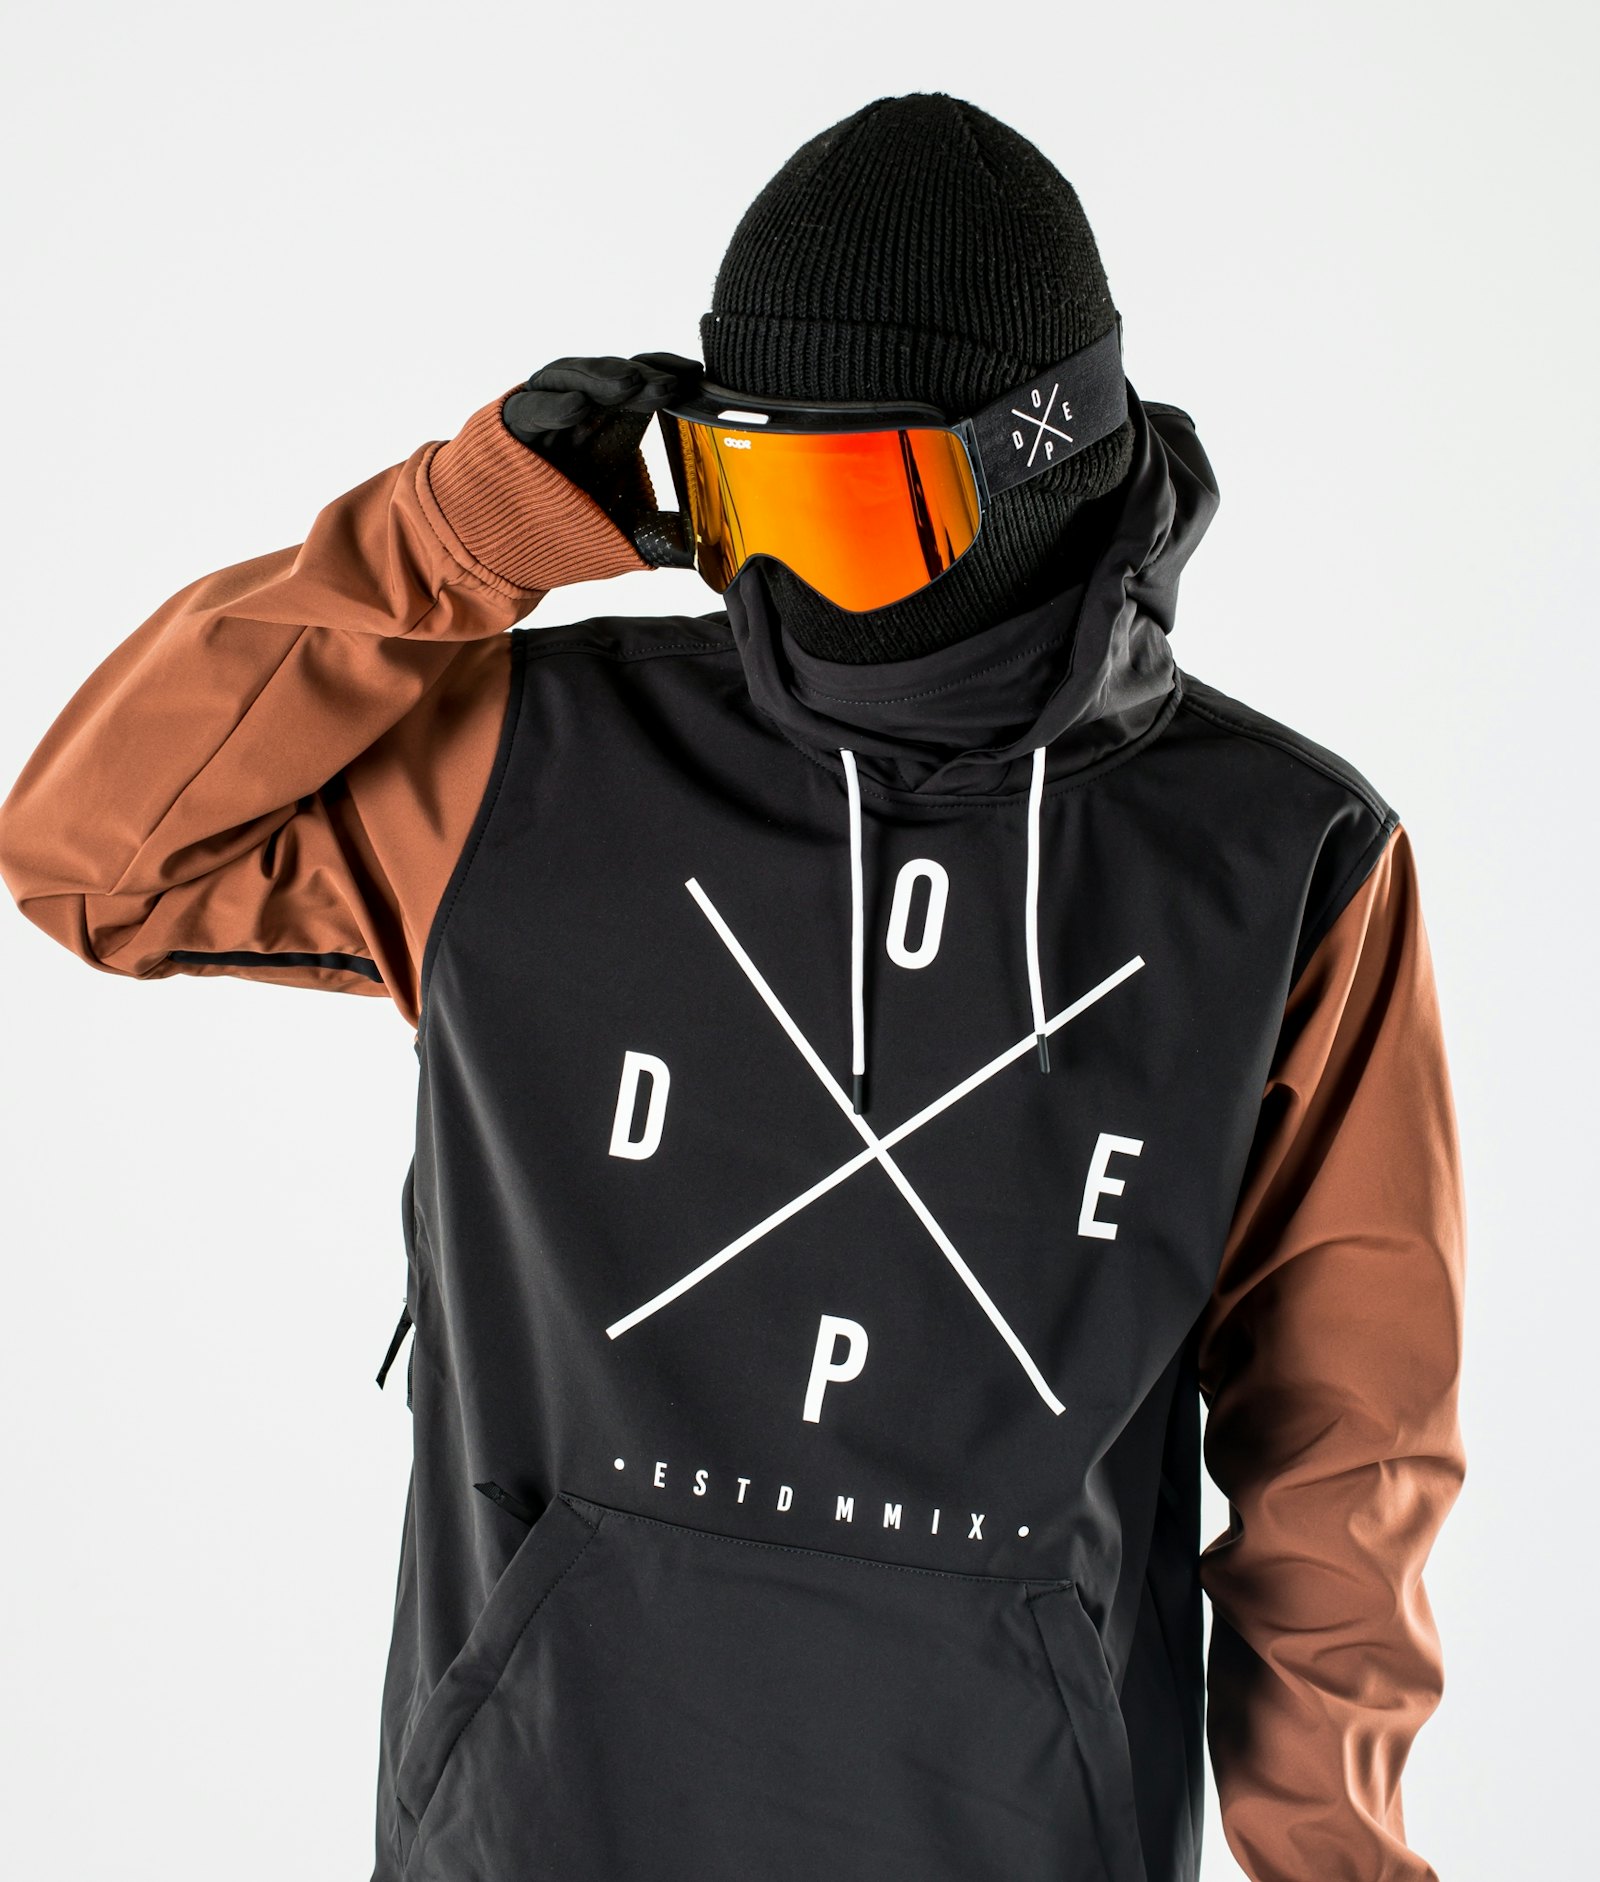 Yeti 10k スキージャケット メンズ Black/Adobe